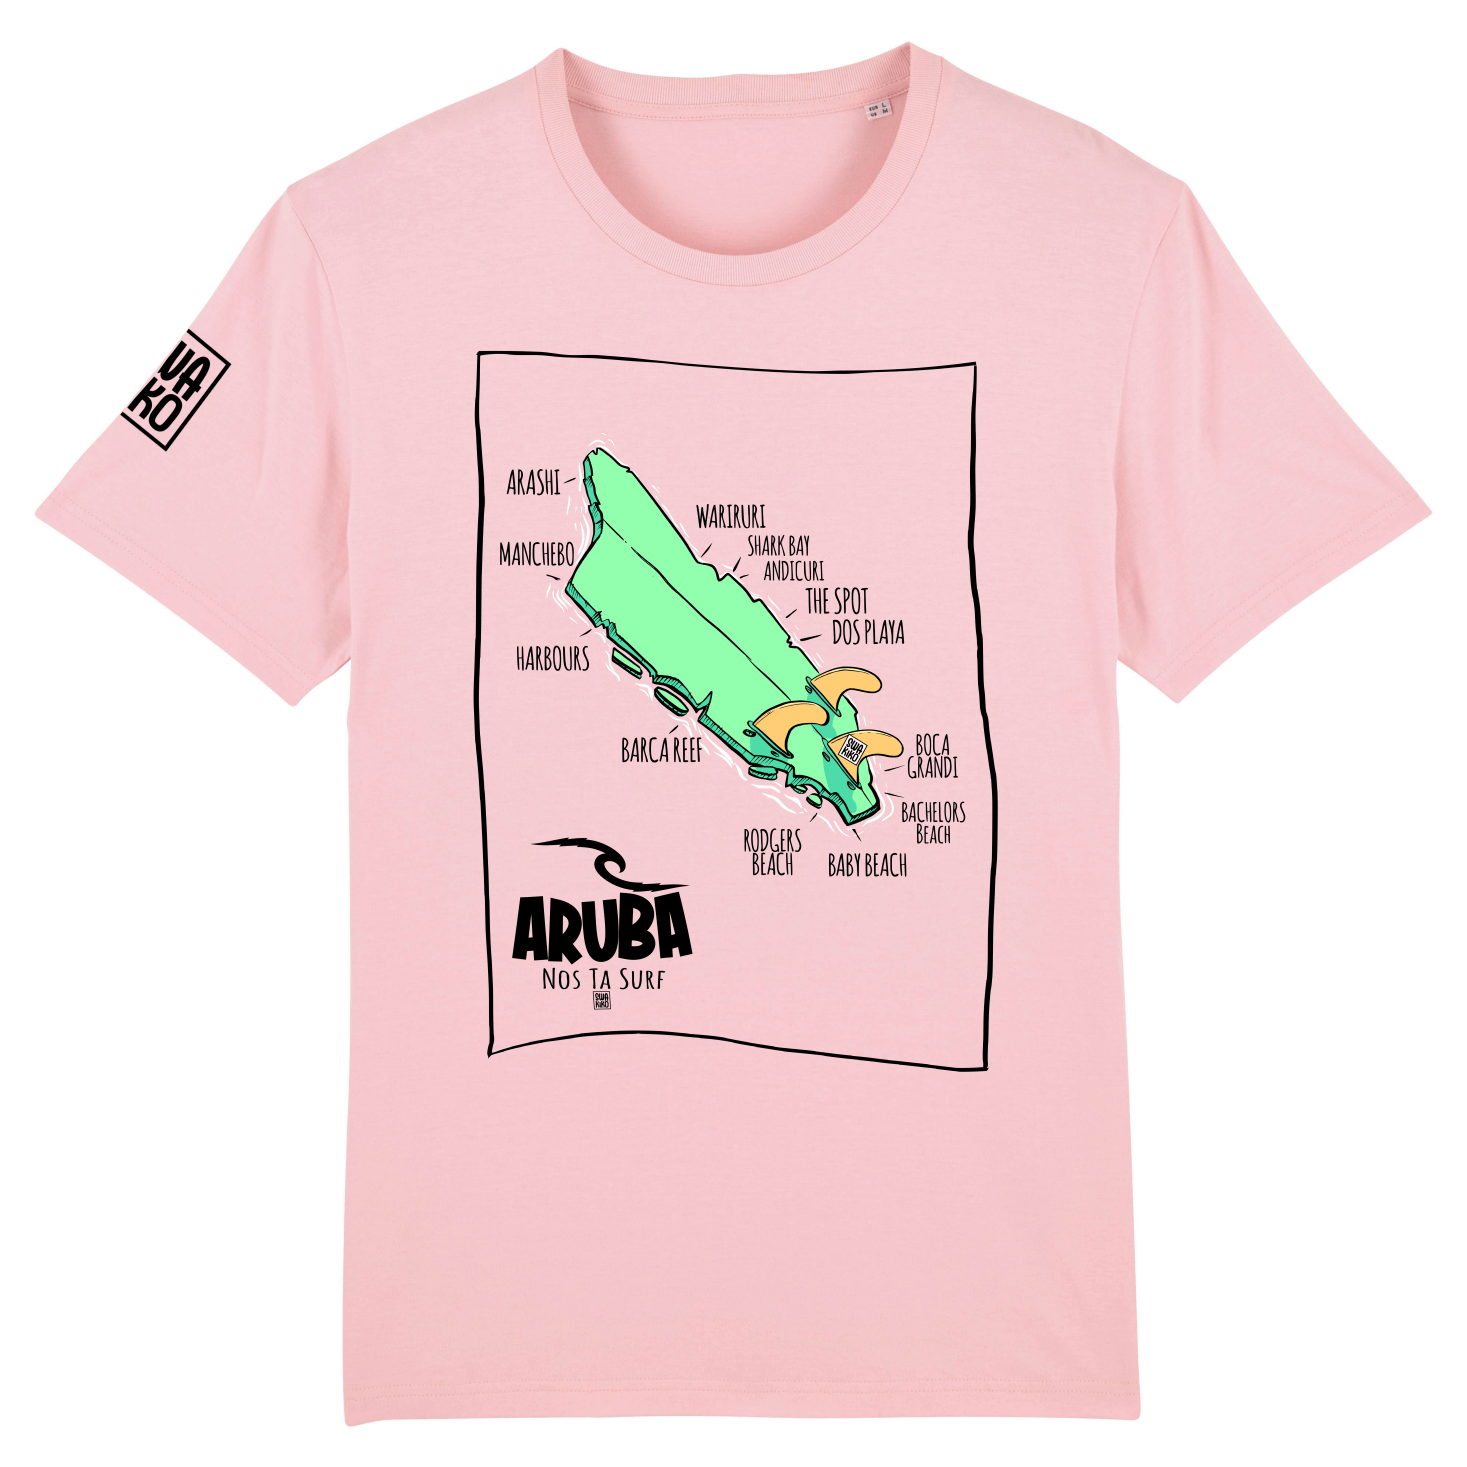 Roze T-shirt met een design van Aruba als beschadigd surfboard en de namen van stranden en surf spots. 